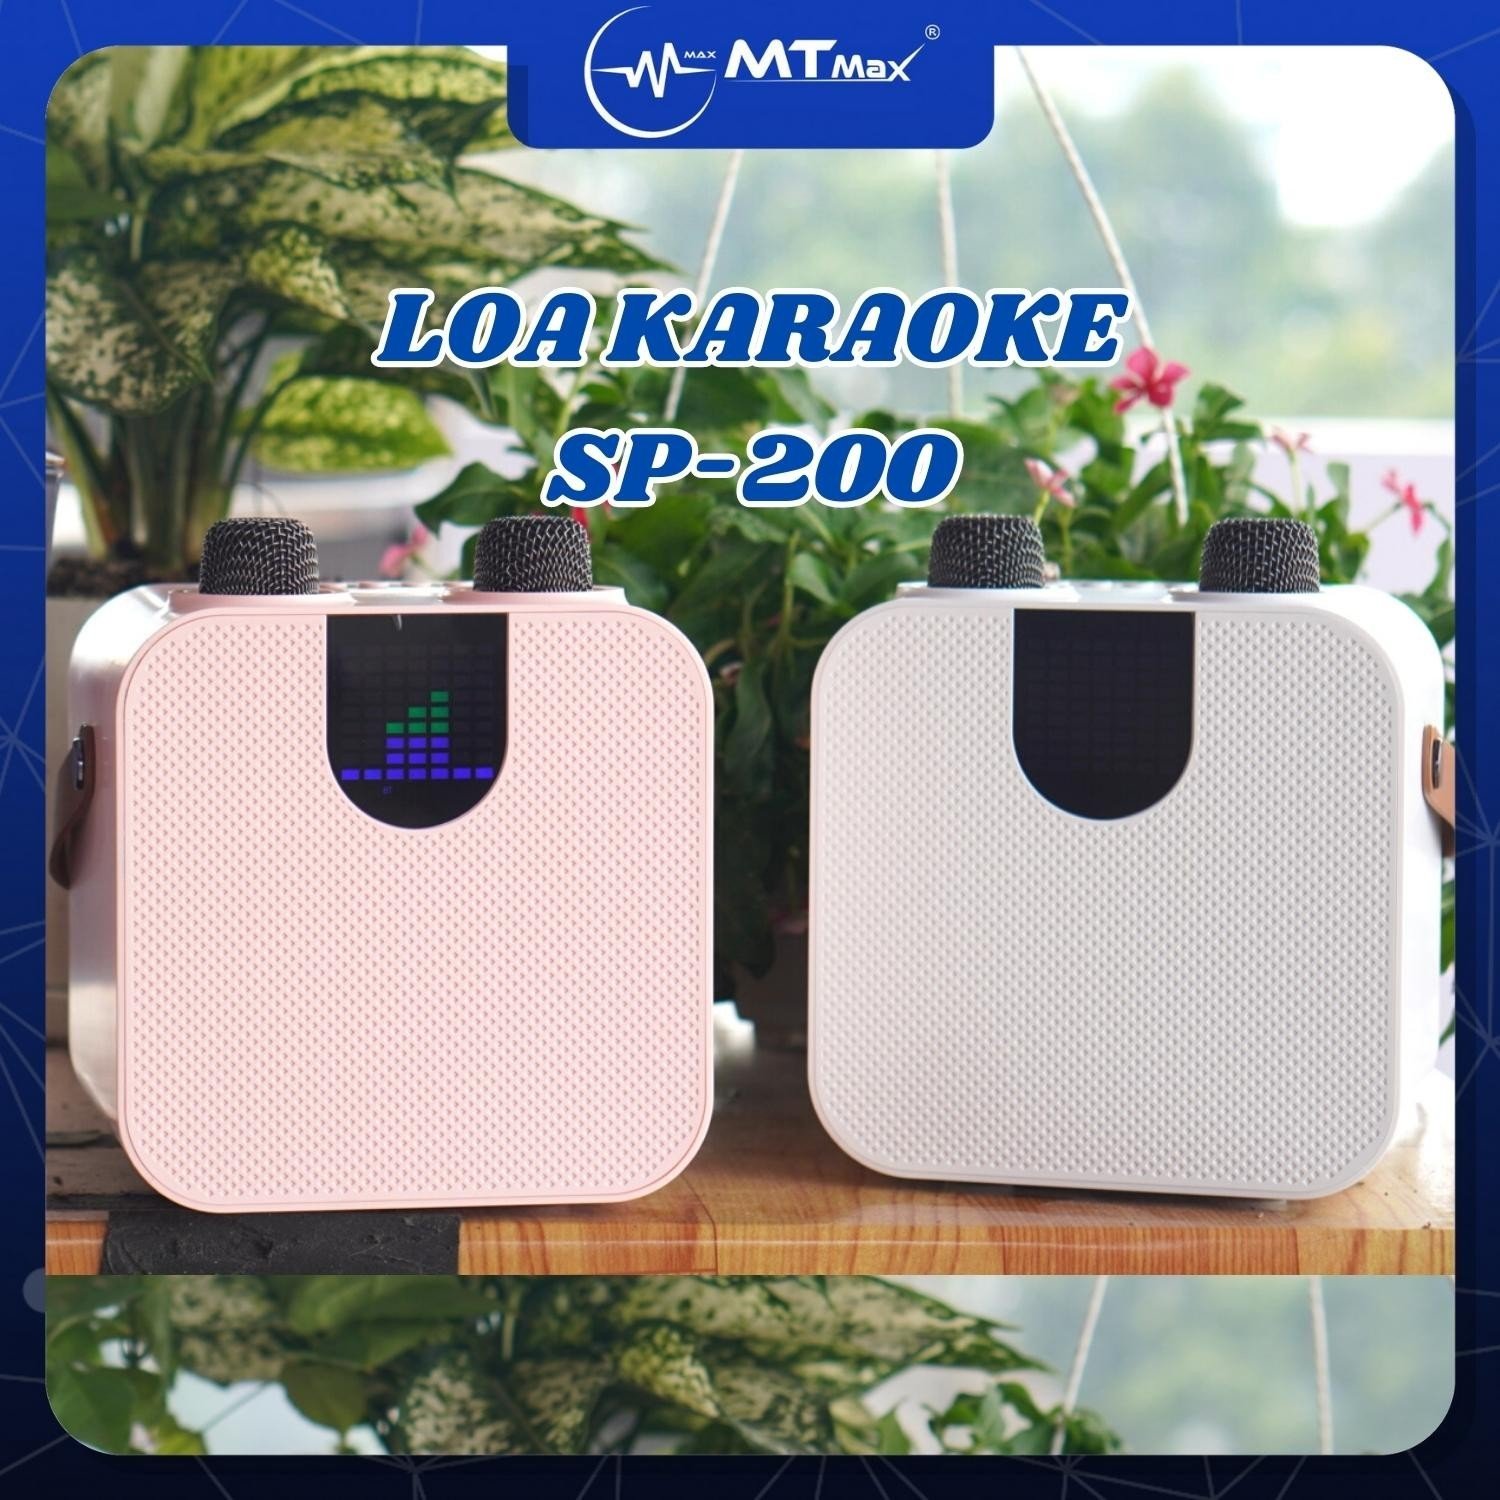 Loa Hát Karaoke SP 200 - kèm 2 Micro không dây bảo hành 12 tháng